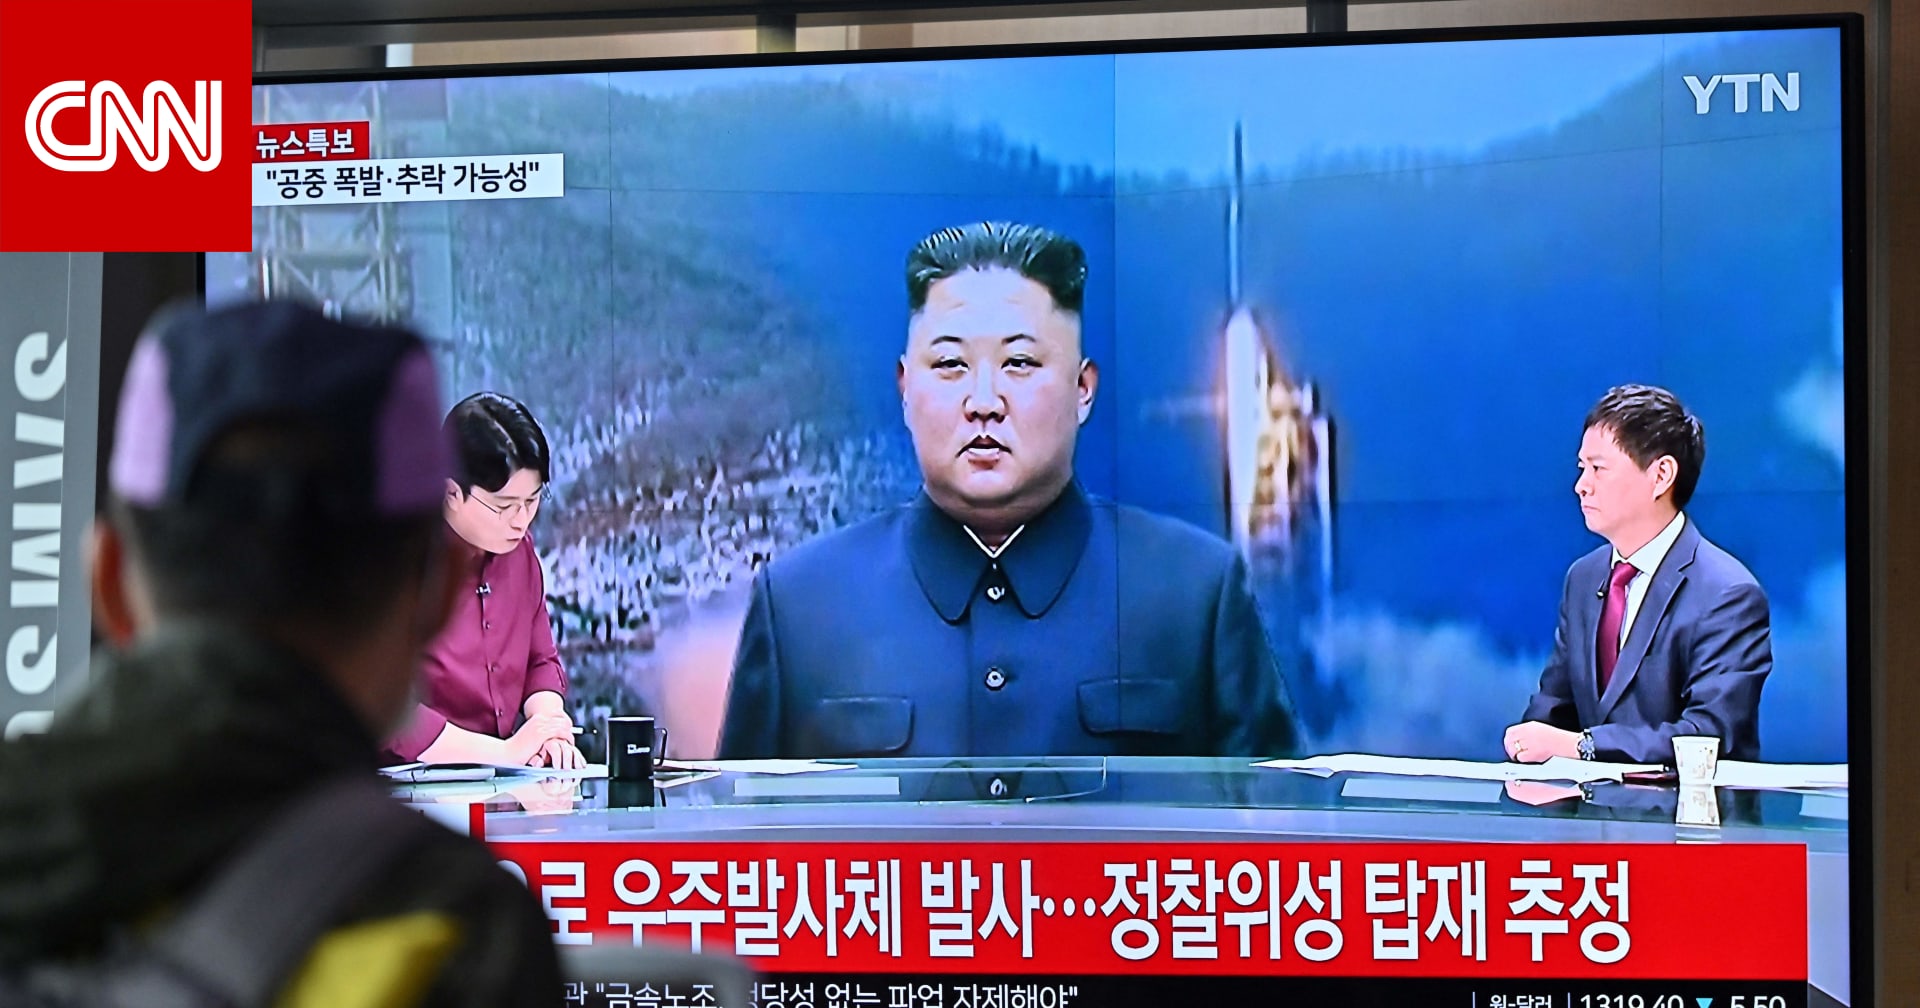 أمريكا تعلق على إطلاق كوريا الشمالية “صاروخا فضائيا”